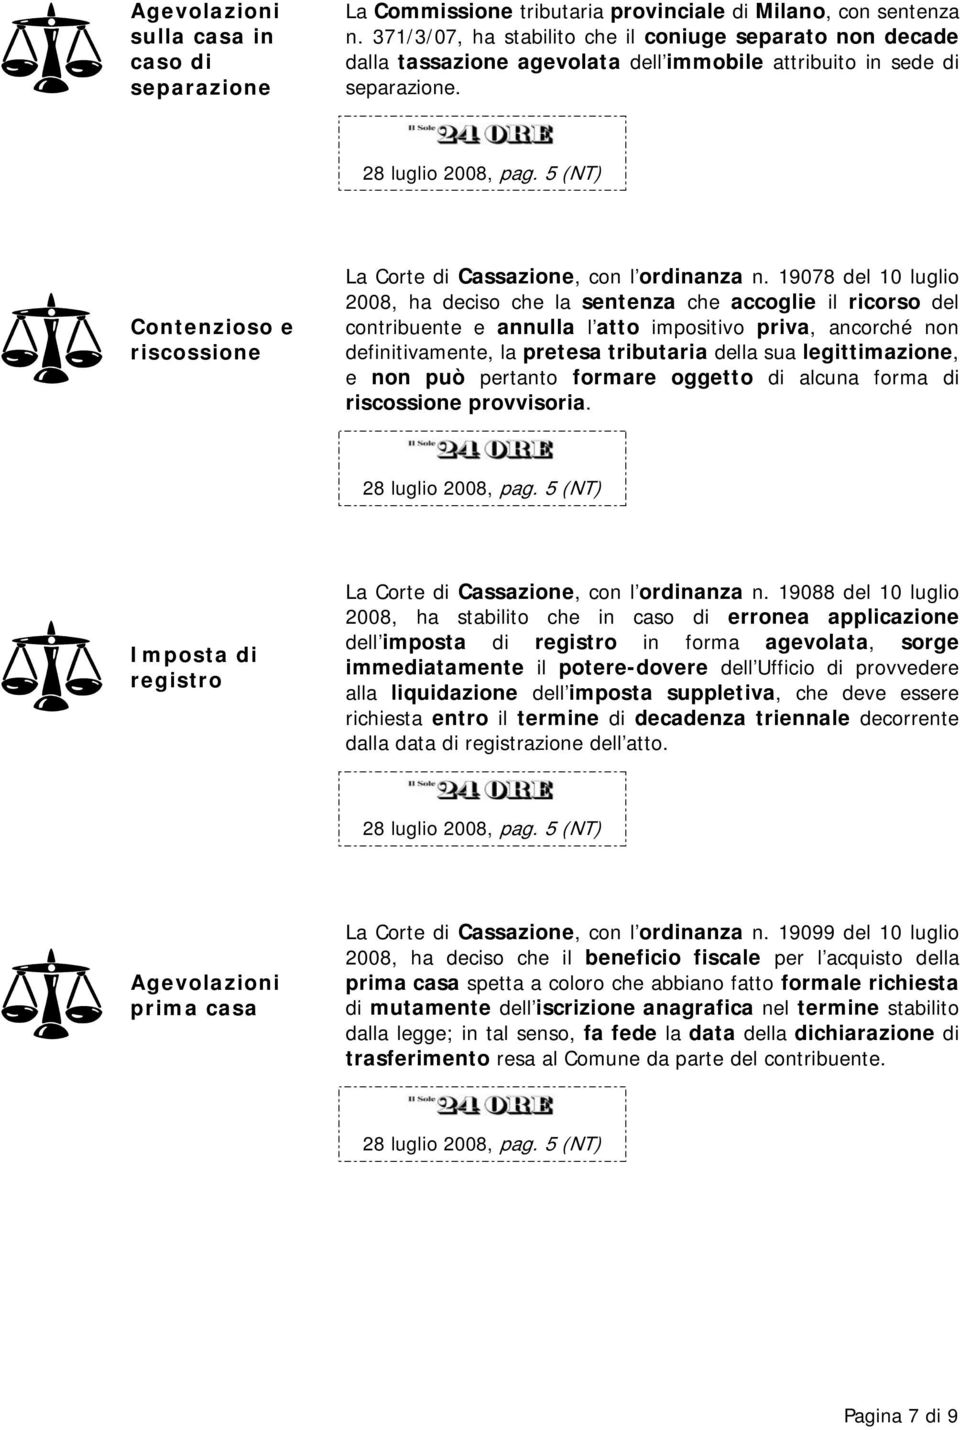 Contenzioso e riscossione La Corte di Cassazione, con l ordinanza n.